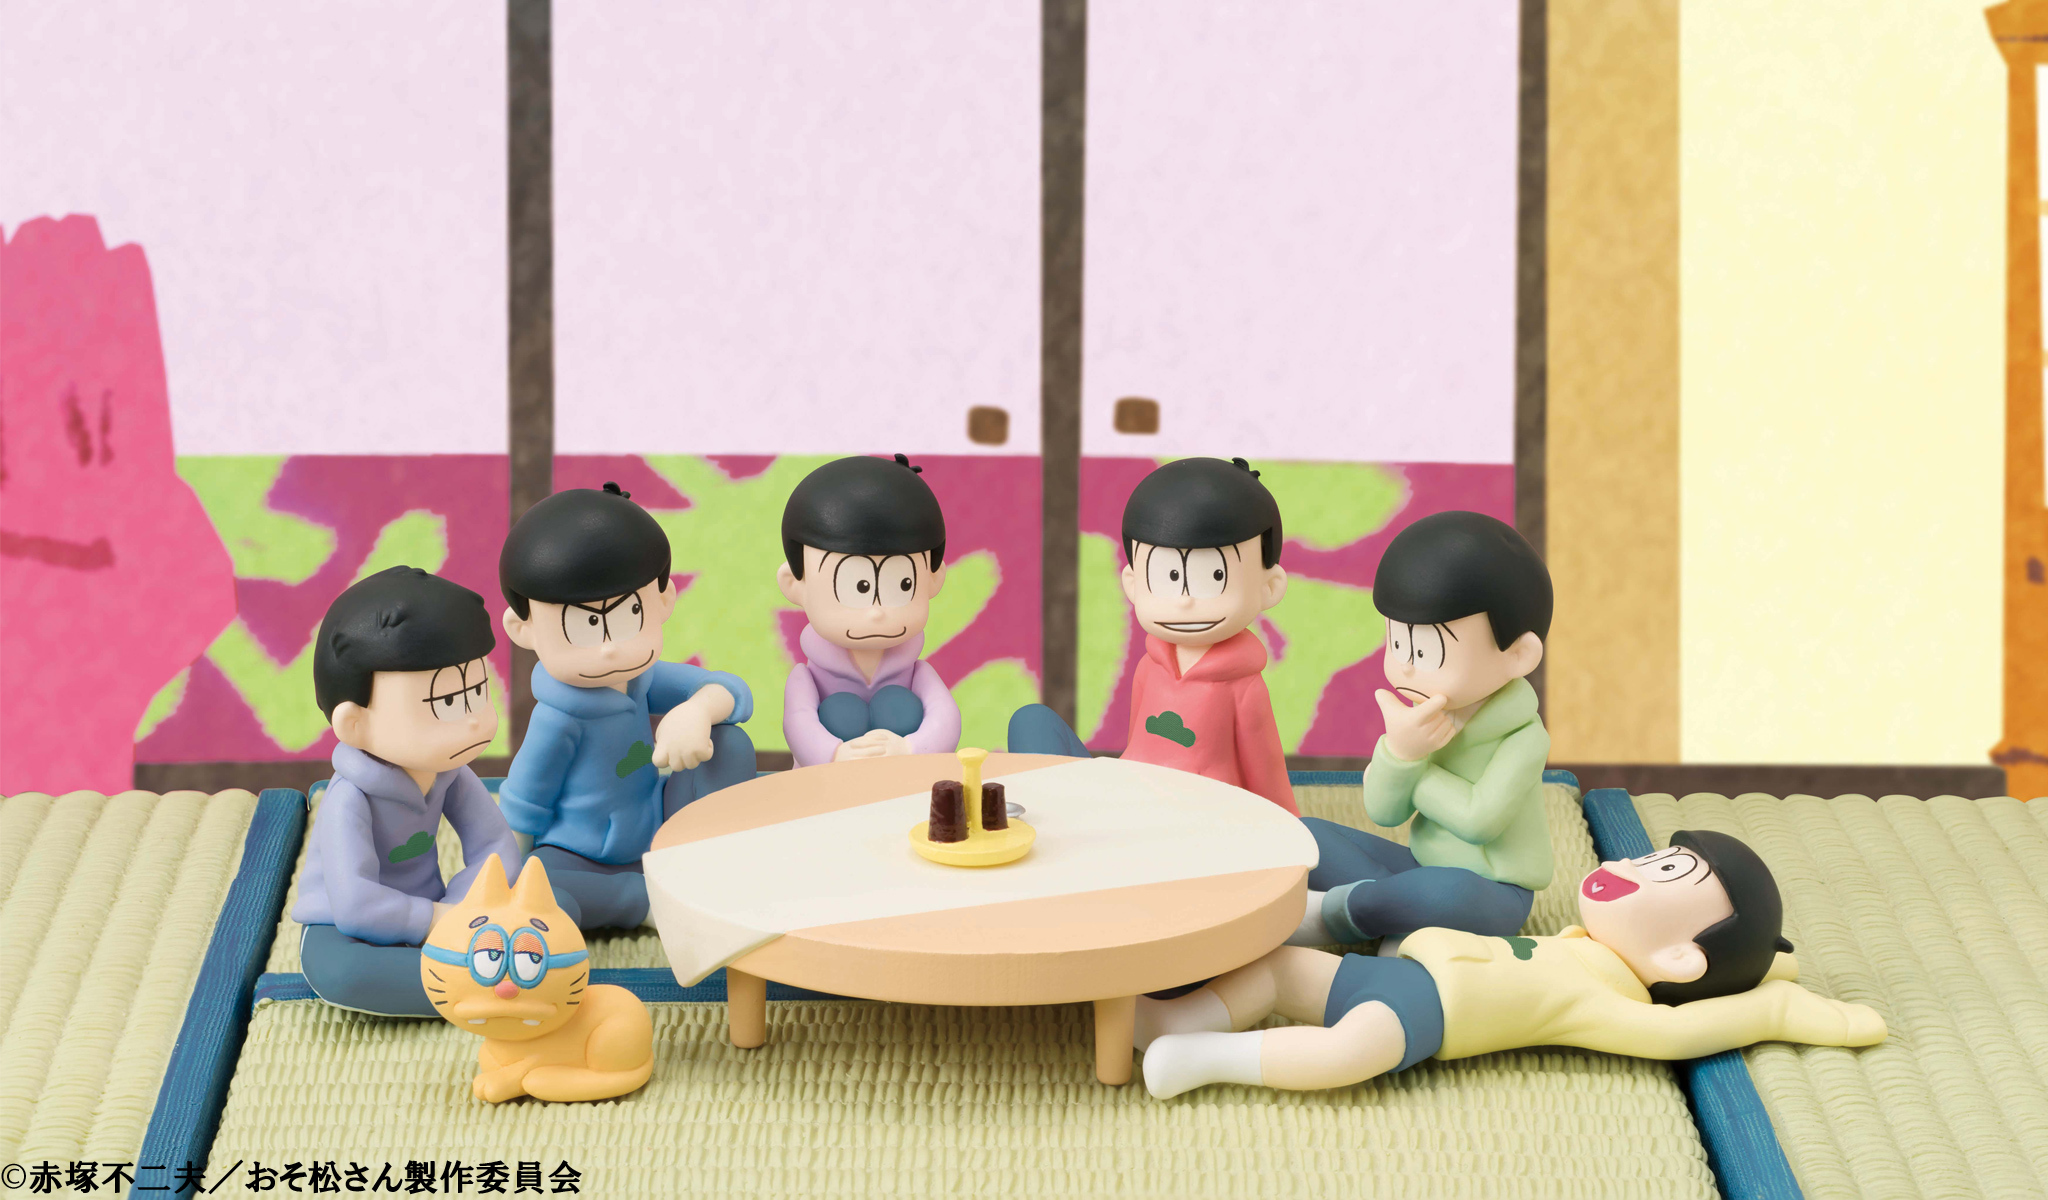 おそ松さん 六つ子が居間でくつろぐ姿を再現 ちゃぶ台など付属の てのひらサイズ フィギュアセット登場 株式会社バンダイ ネット戦略室のプレスリリース